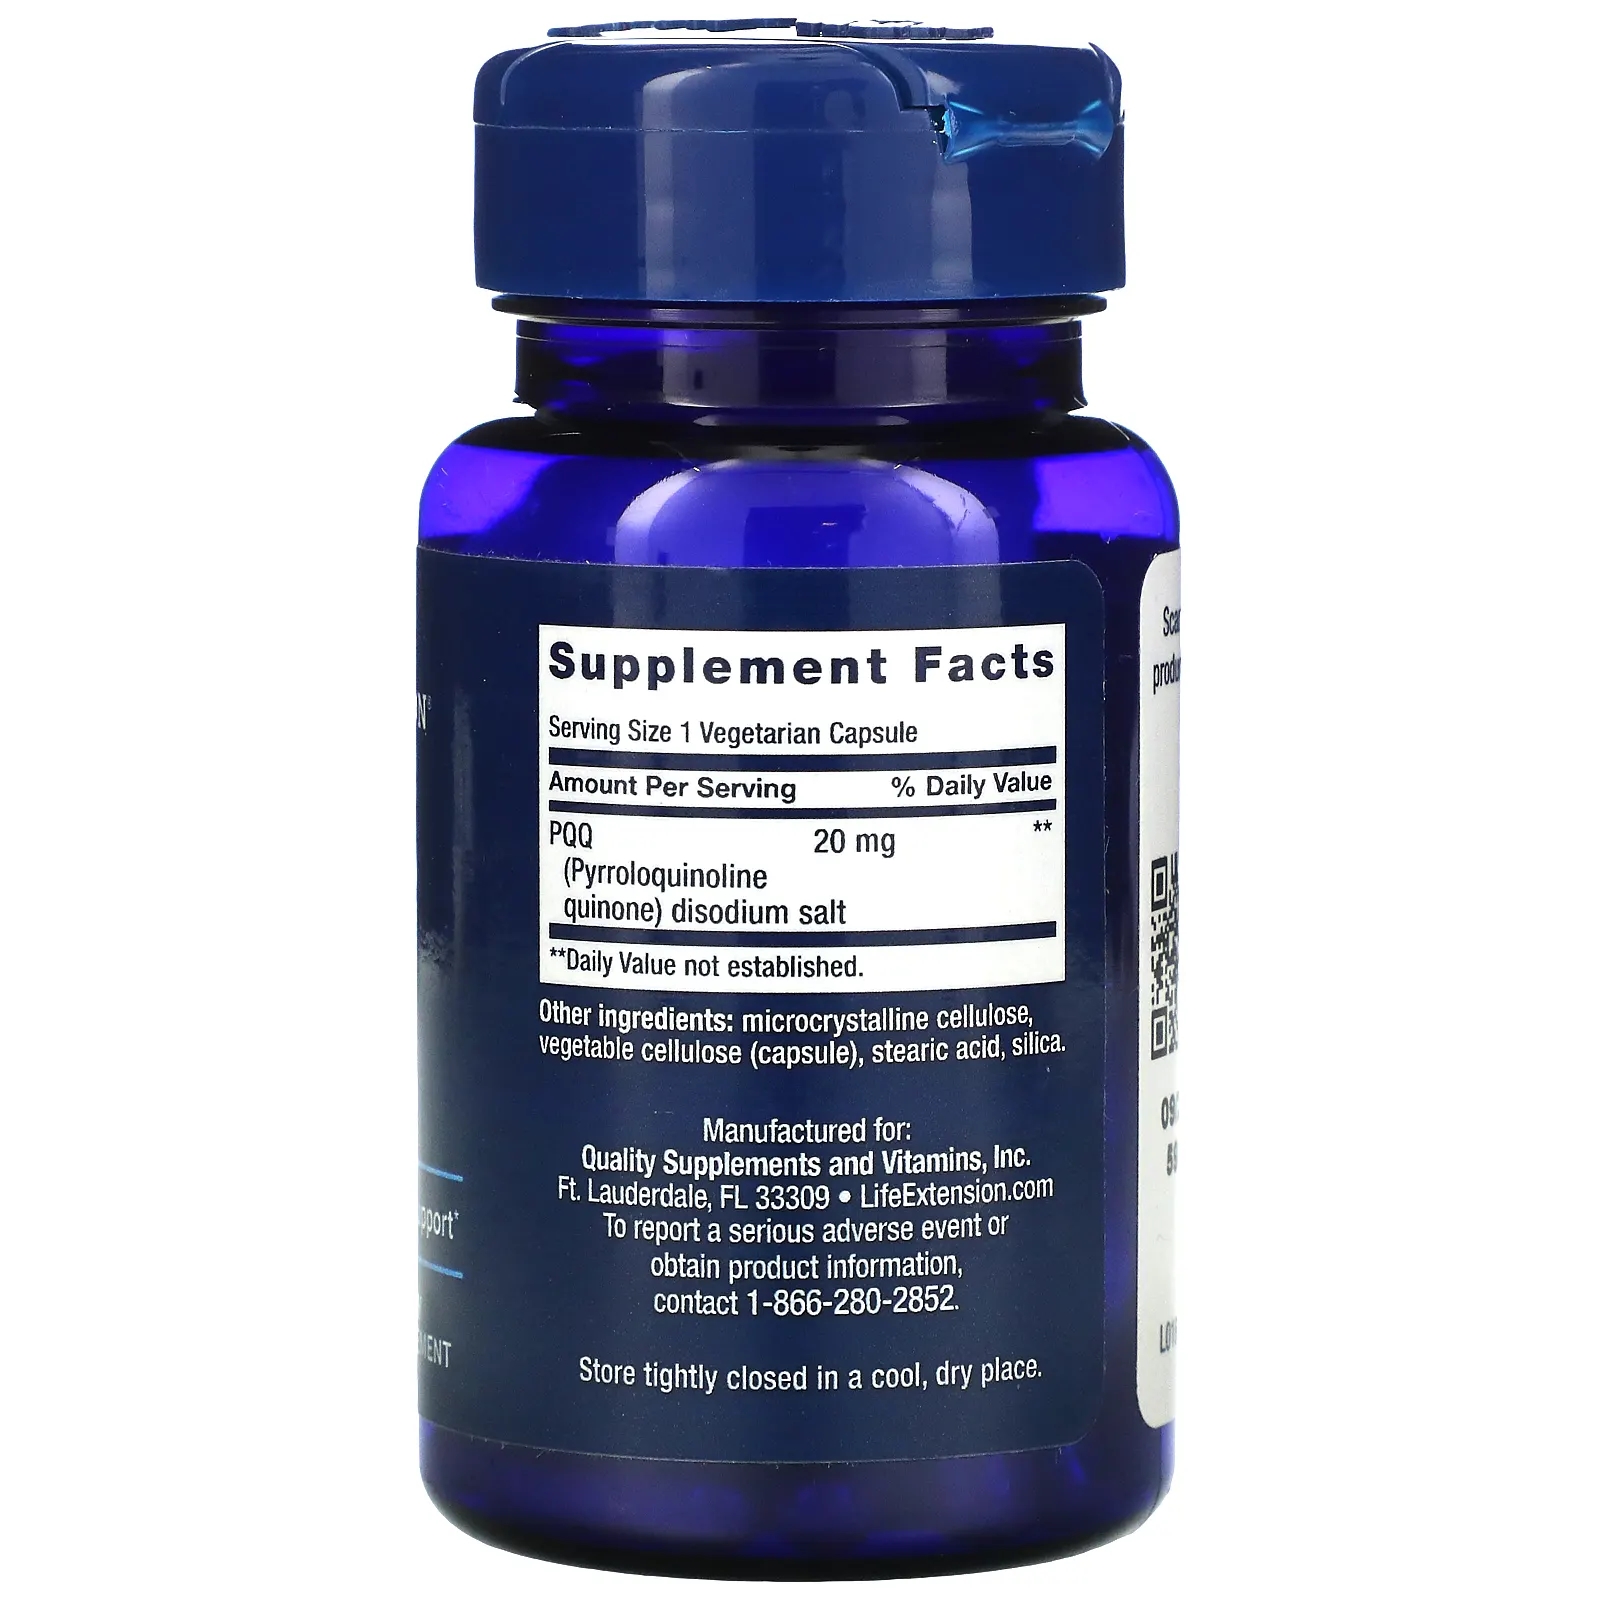 Life Extension PQQ (Pyrroloquinoline Quinone) 20 mg / 30 Vegetarian Capsules